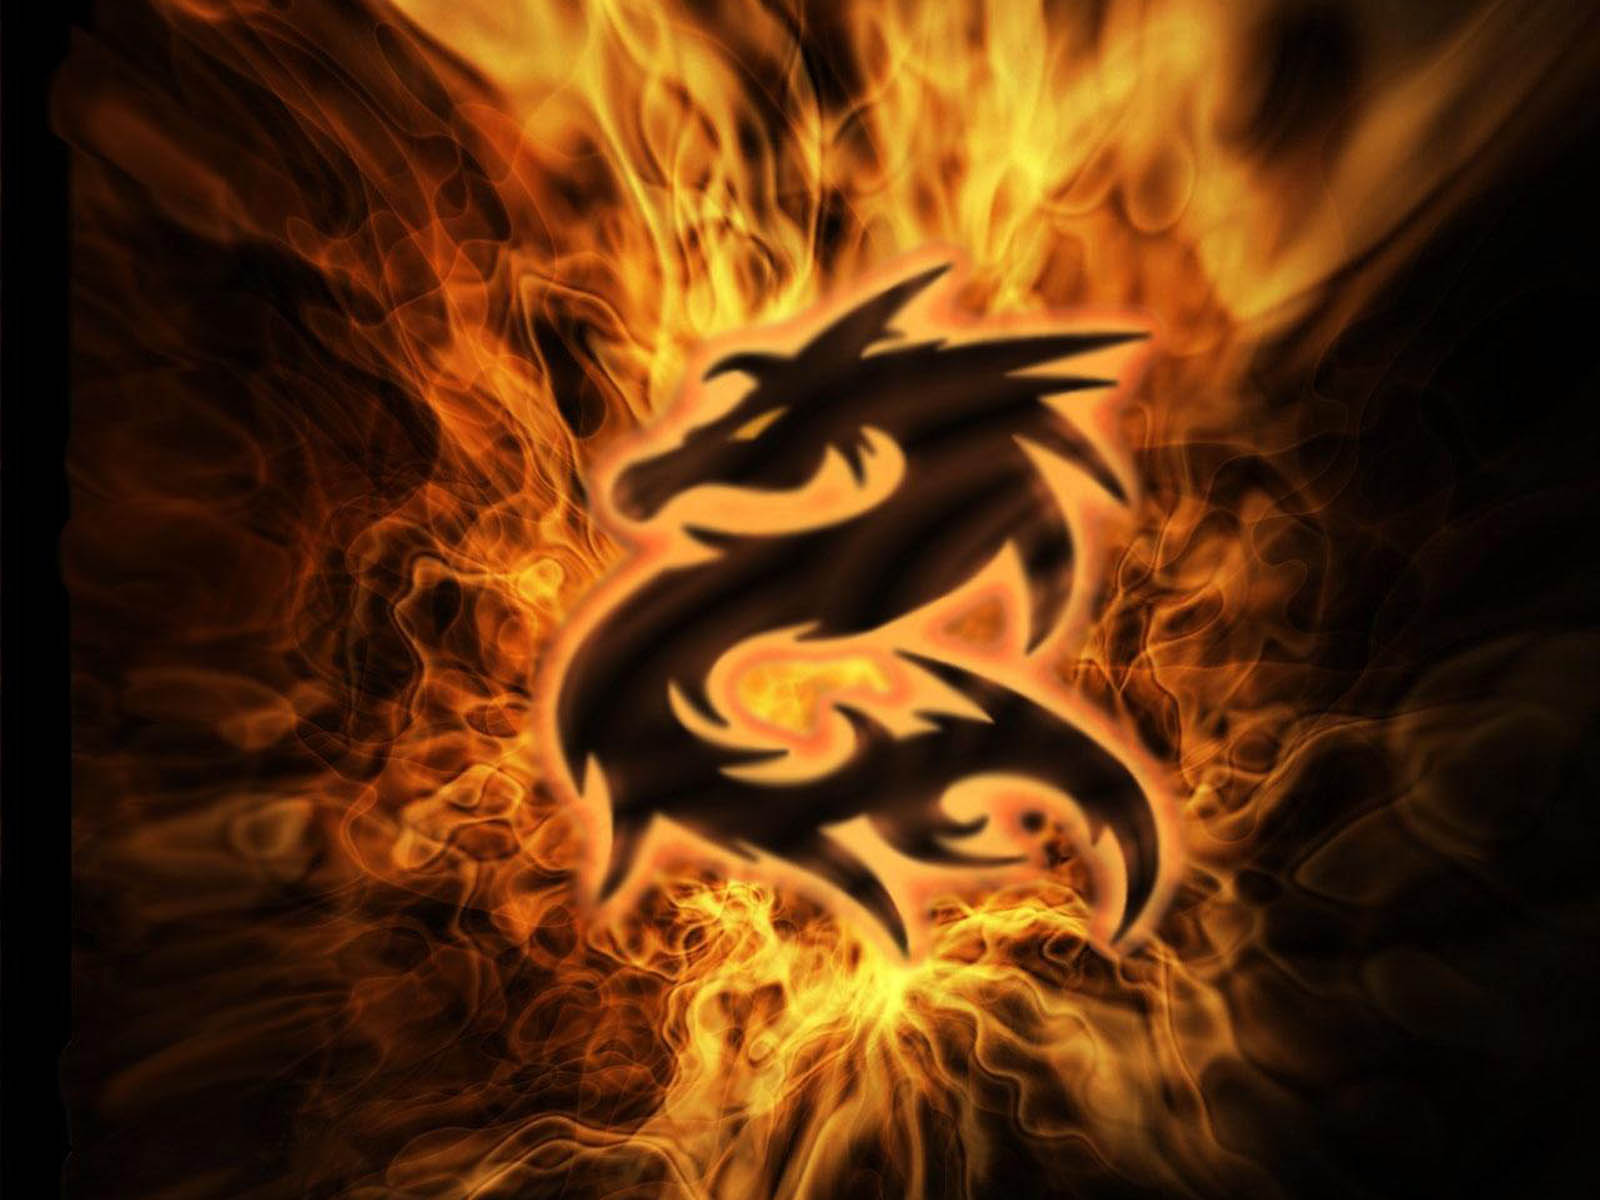 fond d'écran dragon gratuit,flamme,feu,dragon,chaleur,personnage fictif